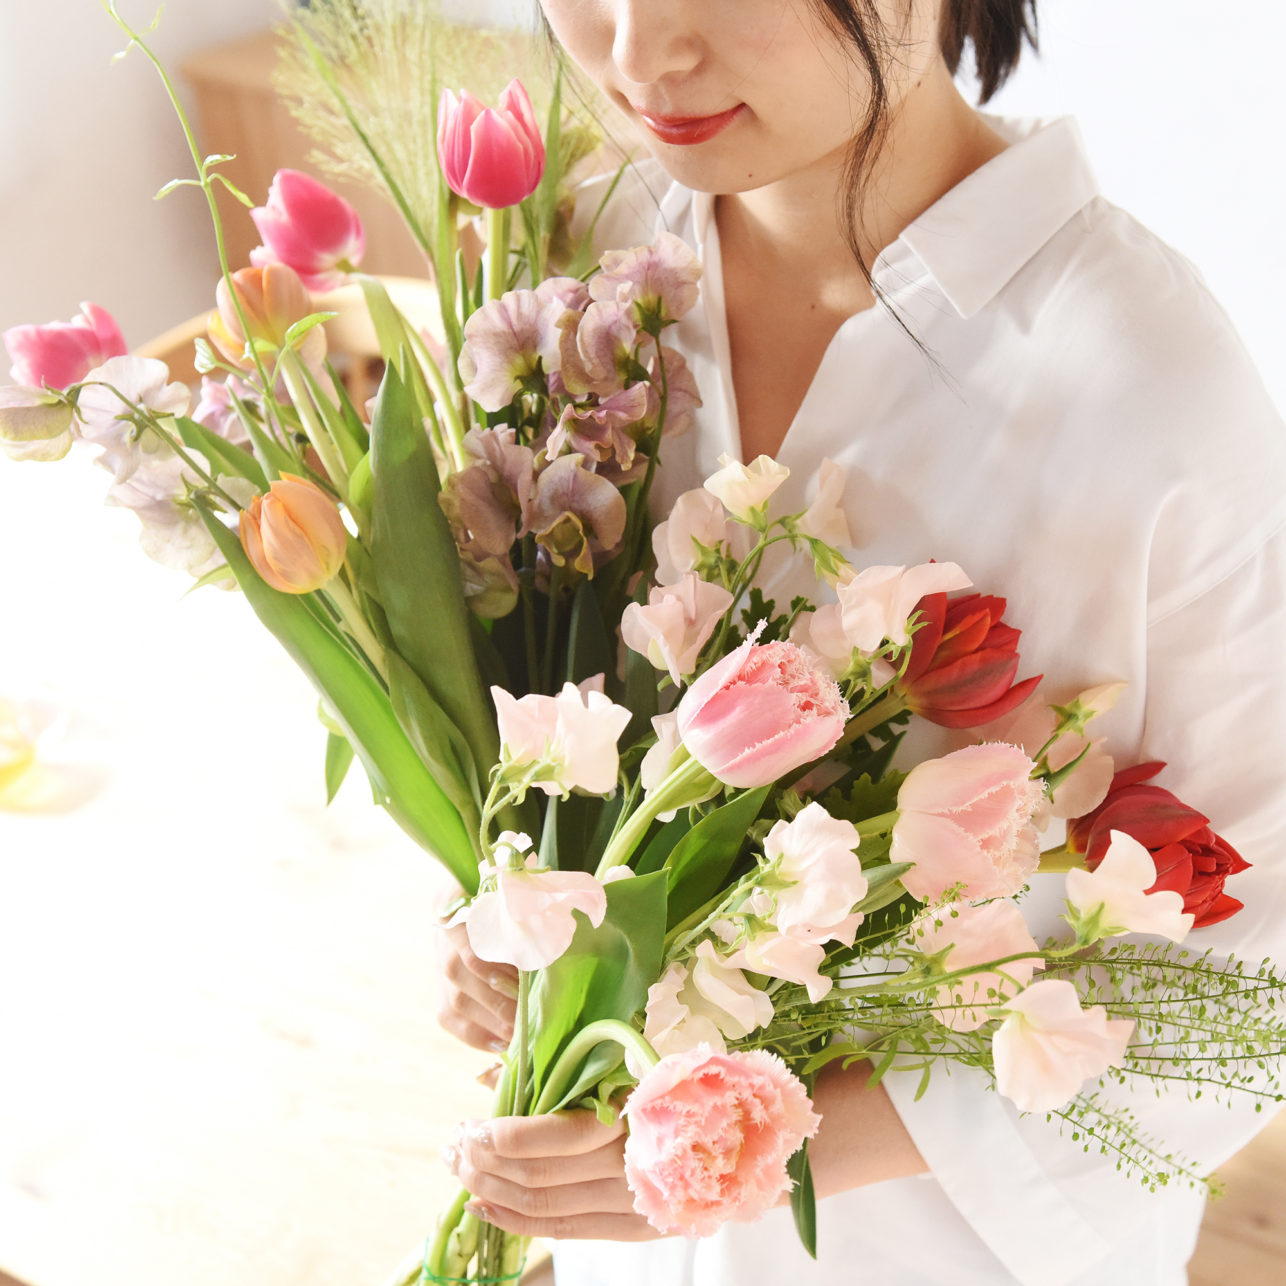 お花のサブスク「ハナノヒ」に、 お届けスタイルの新サービスが登場 お花のサブスクリプションサービス 「ハナノヒ 365days」提供開始 〜「毎日を彩るライフスタイル」をお届け〜